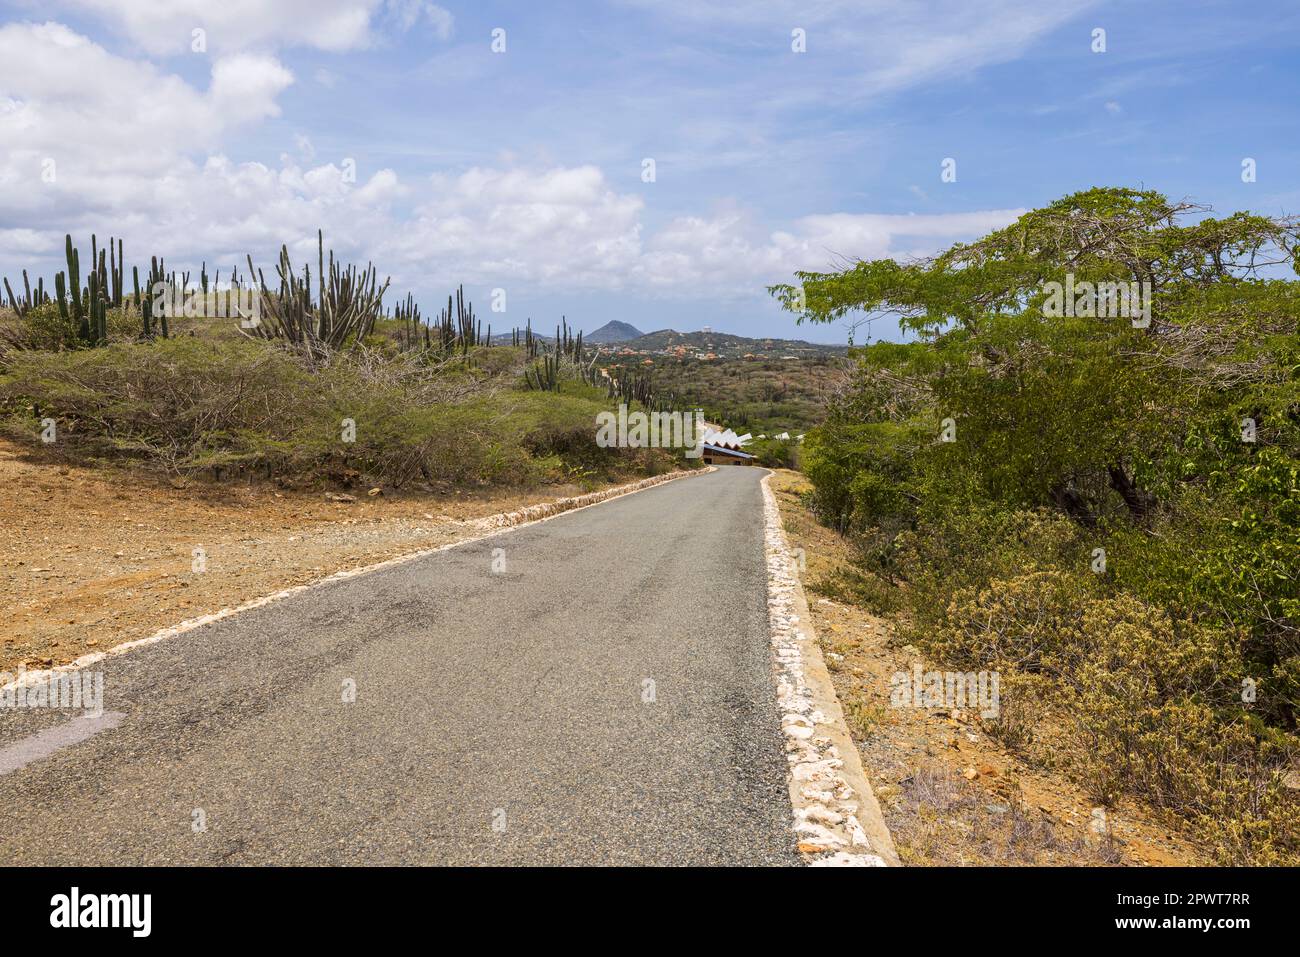 Wunderschöne Aussicht auf die Steinwüste des Naturparks auf der Insel Aruba mit Asphaltstraße für Fahrzeuge. Aruba. Stockfoto